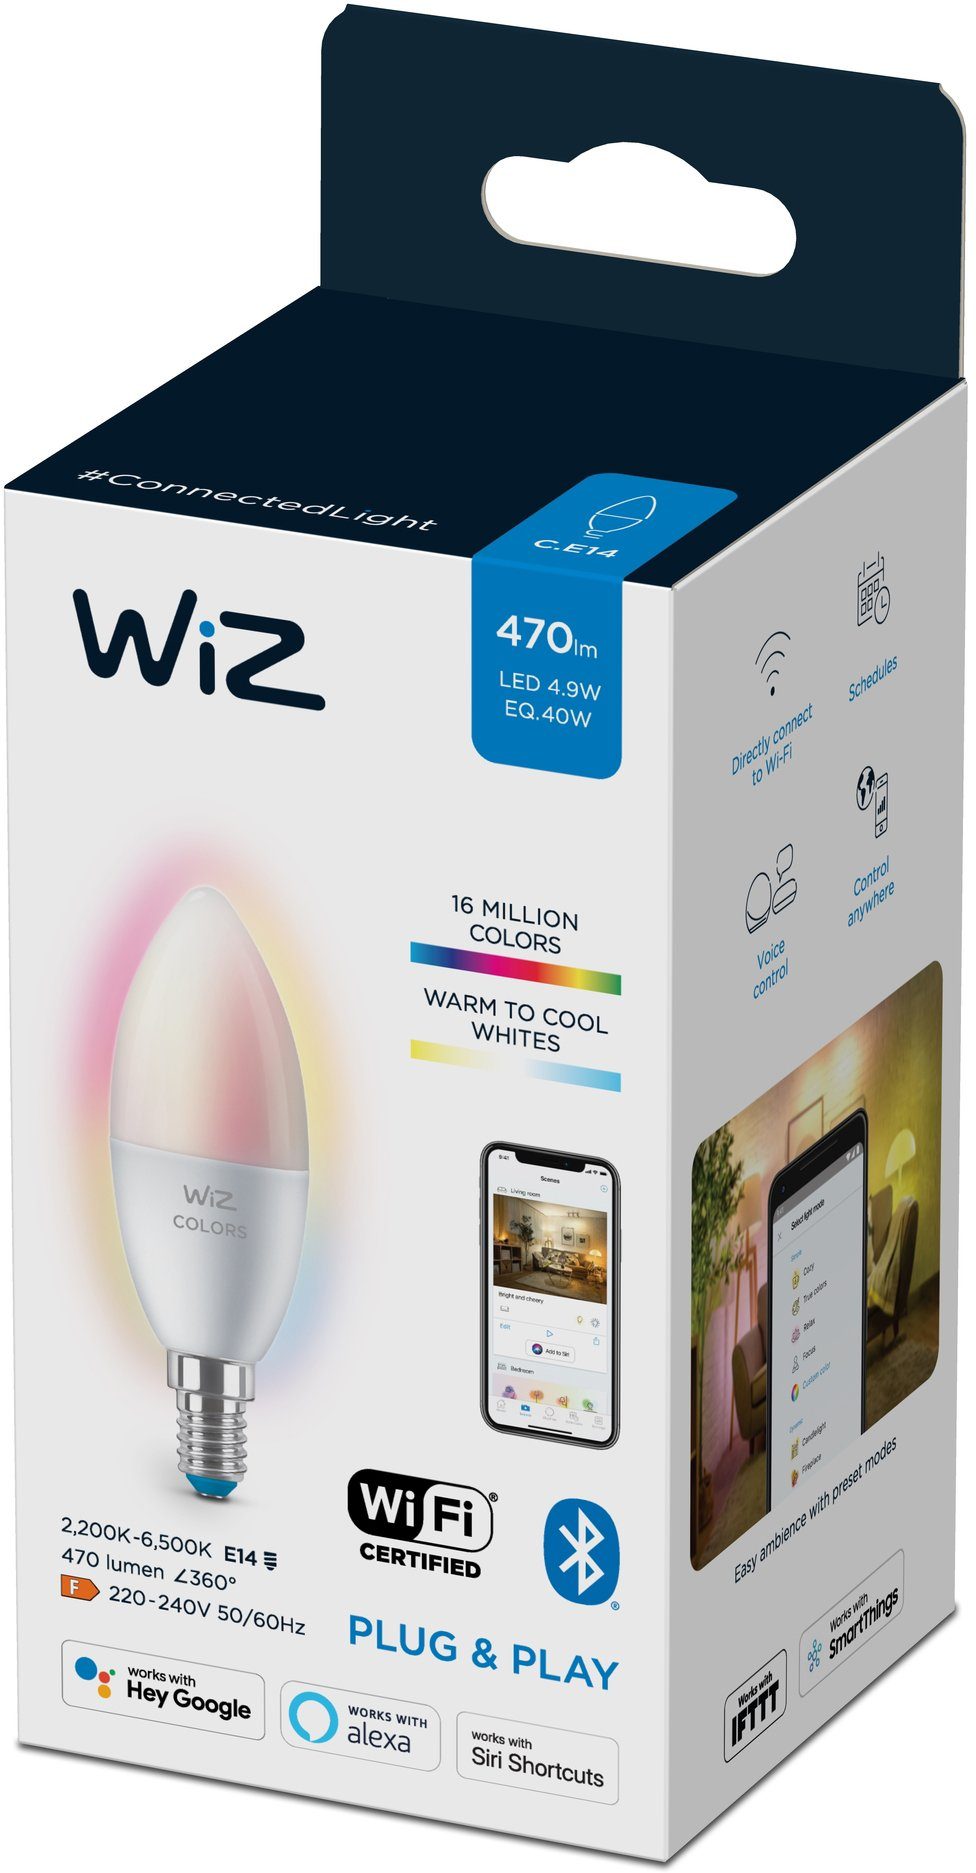 WiZ St., Beleuchtung matt smarte mit Lampen White E14 Einzelpack, Sie Wiz Kreieren LED Tunable 1 Farbwechsler, White&Color E14, 40W Kerzenform LED-Leuchtmittel Tunable